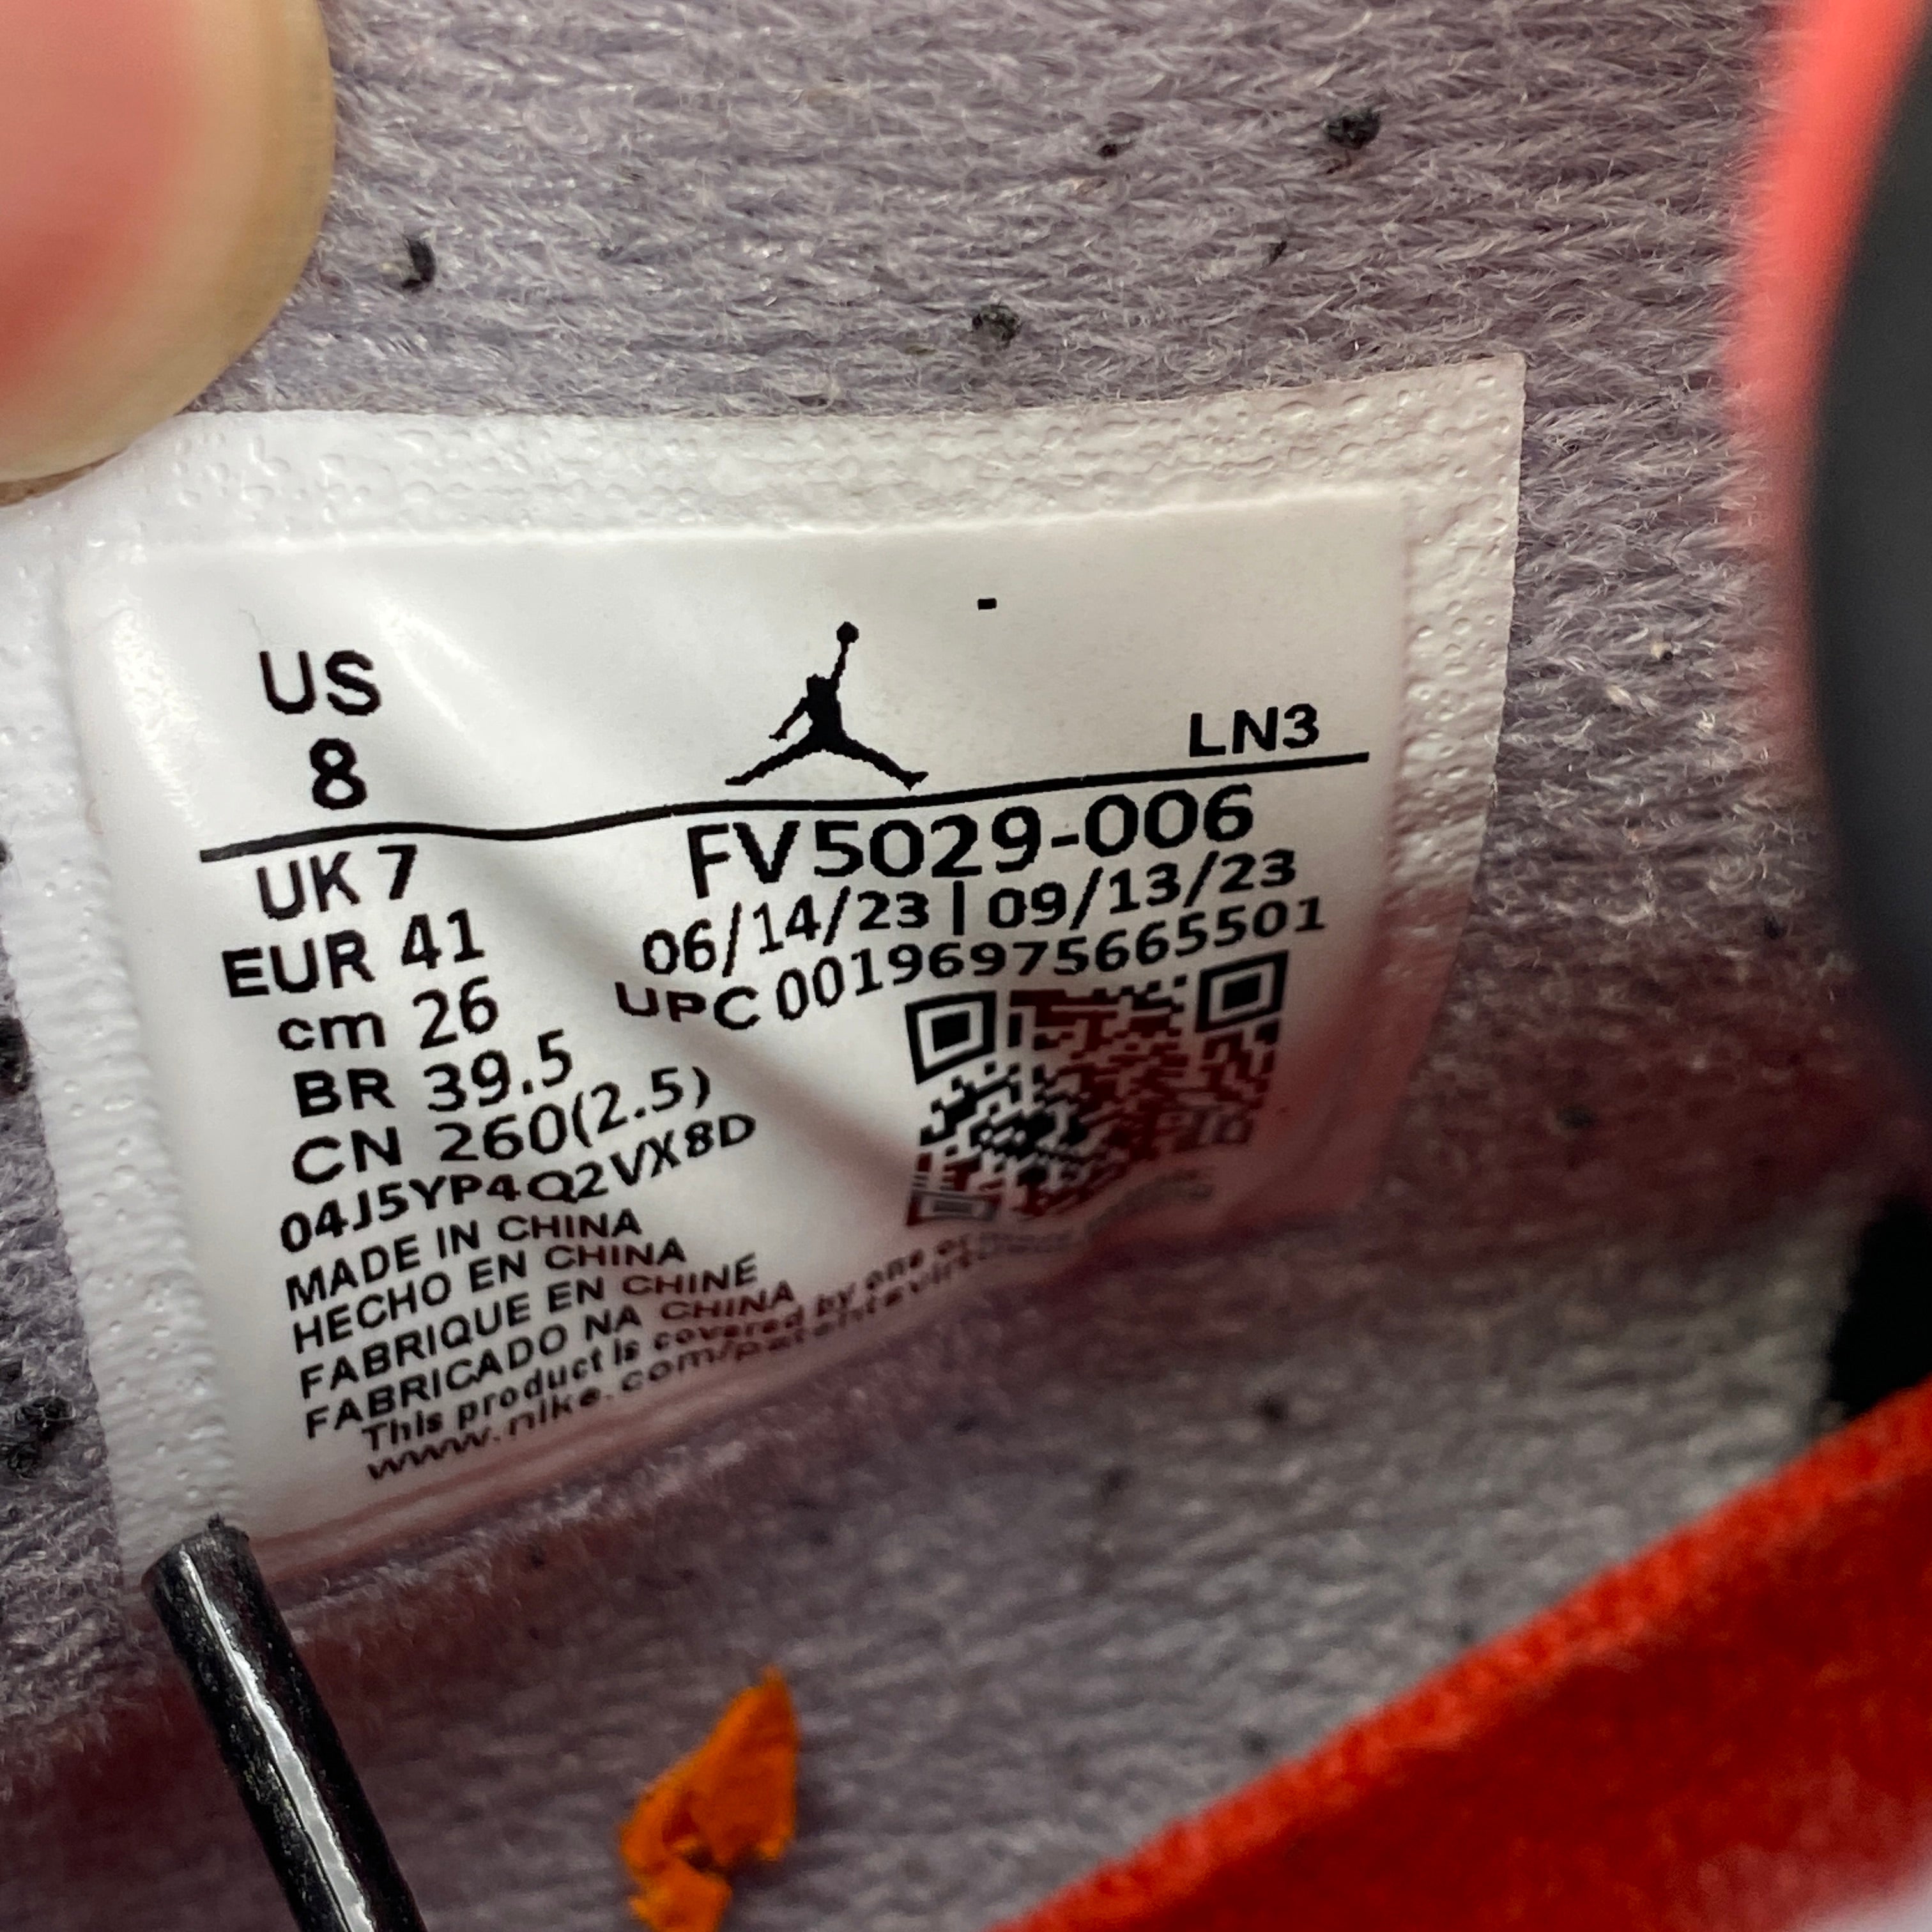 Air Jordan 4 Retro &quot;Bred Reimagined&quot; 2024 Used Size 8